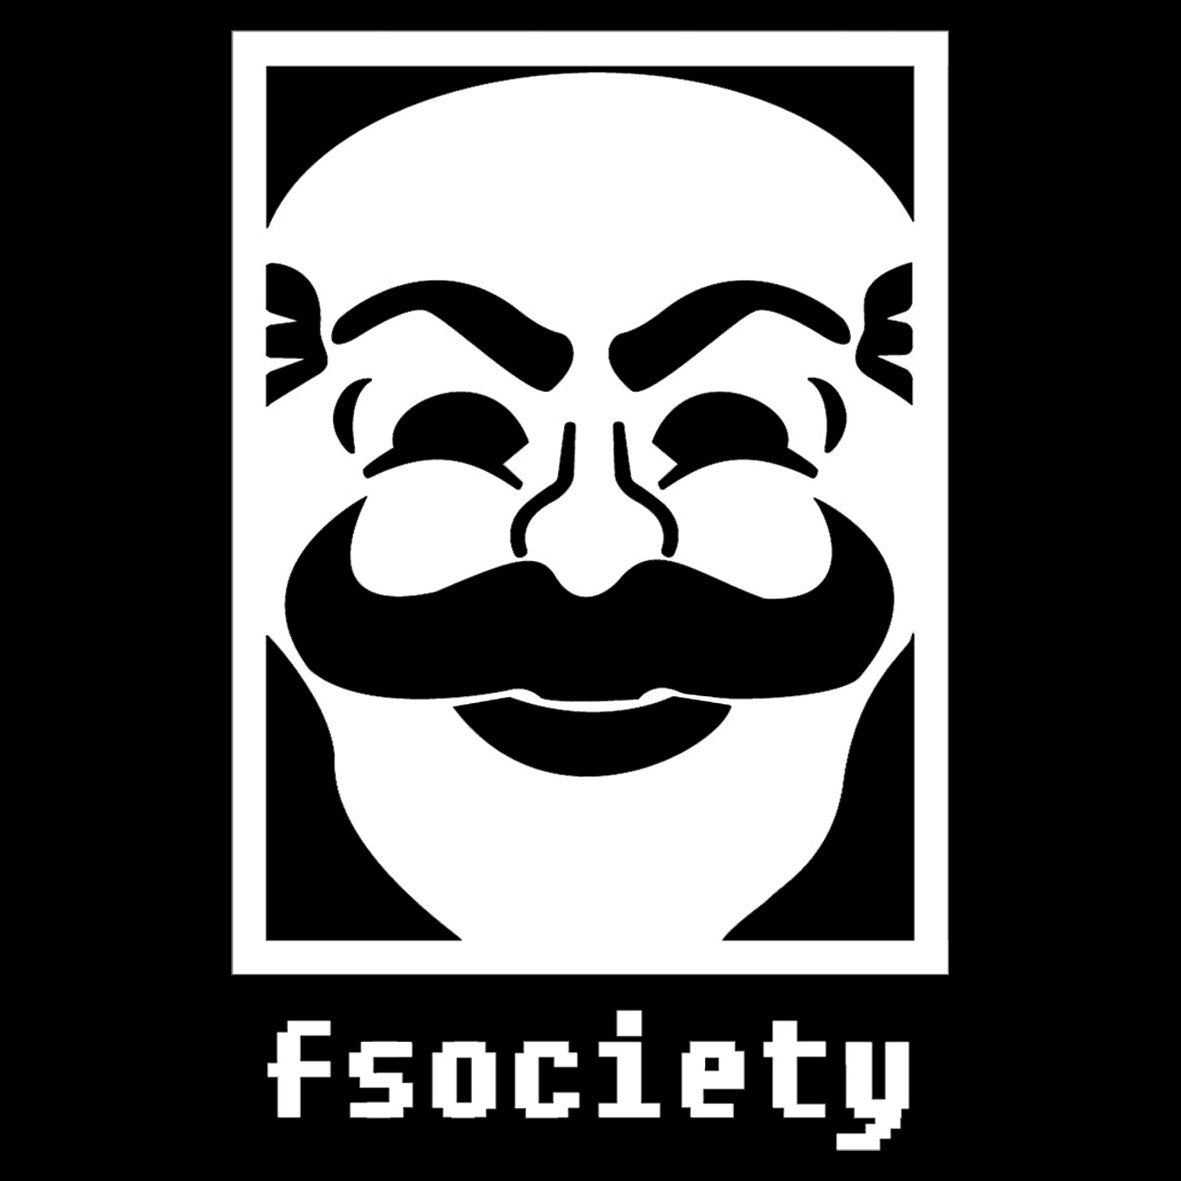 Mr Robot F Society